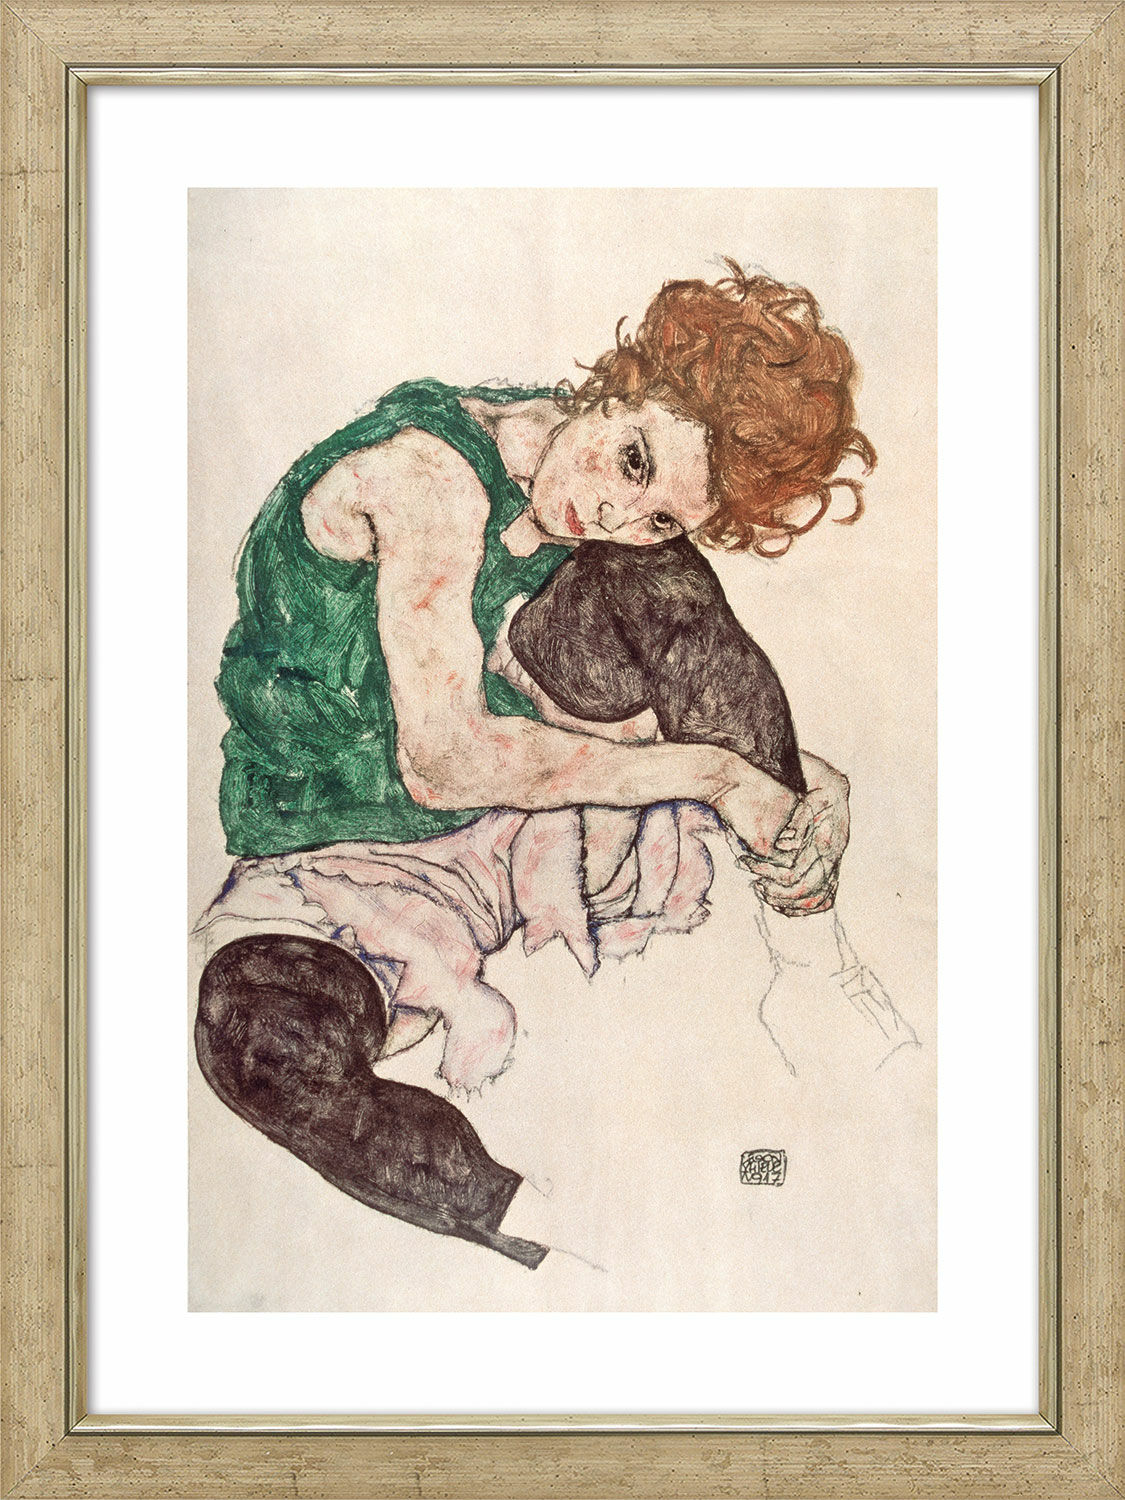 Tableau "Femme assise au genou levé" (1917), encadré von Egon Schiele